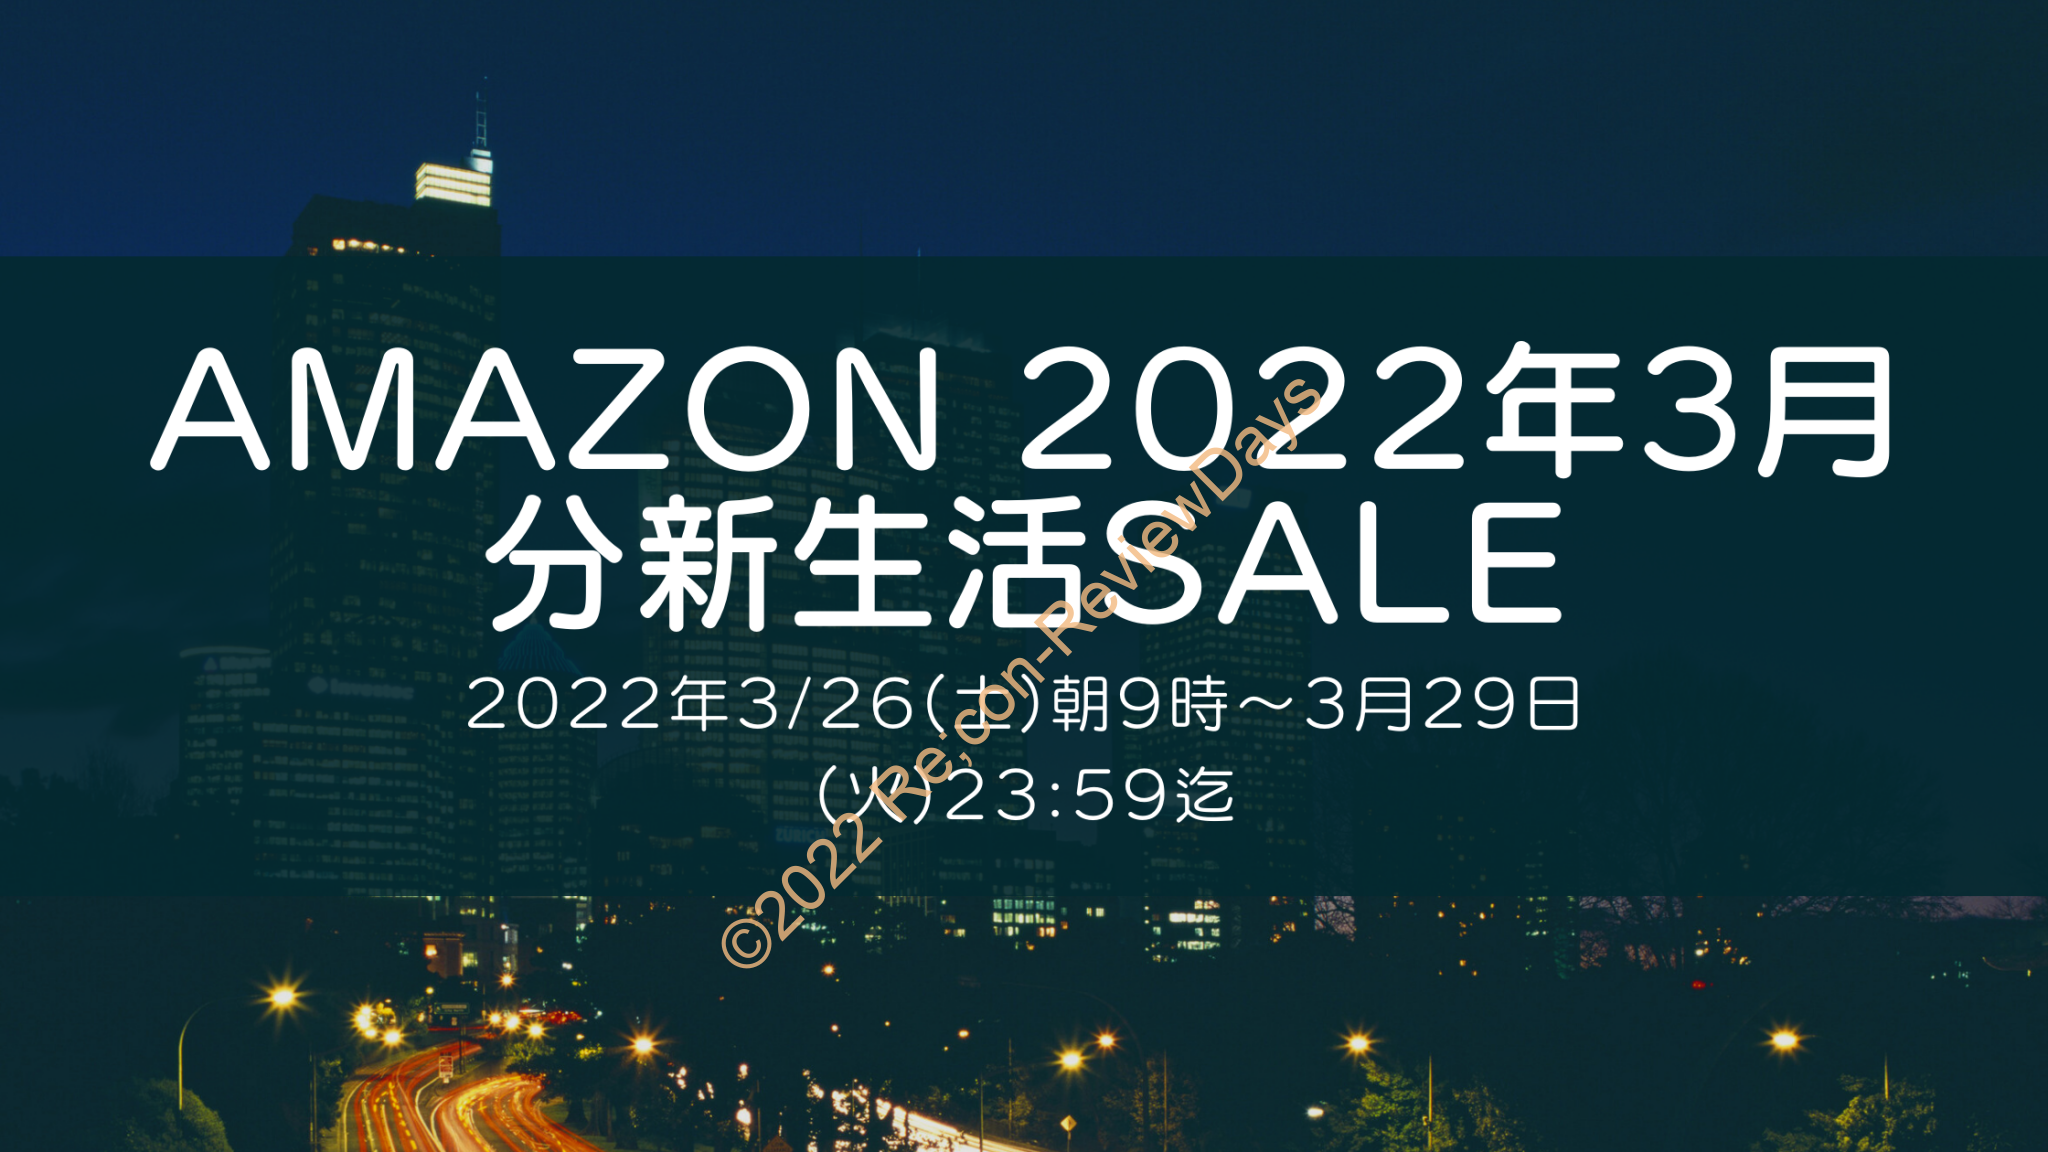 Amazonにて2022年3月実施分の「新生活SALE」を3月26日(土)朝9時から約4日間開催予定 #Amazon #アマゾン #セール #特価 #タイムセール #タイムセール祭り